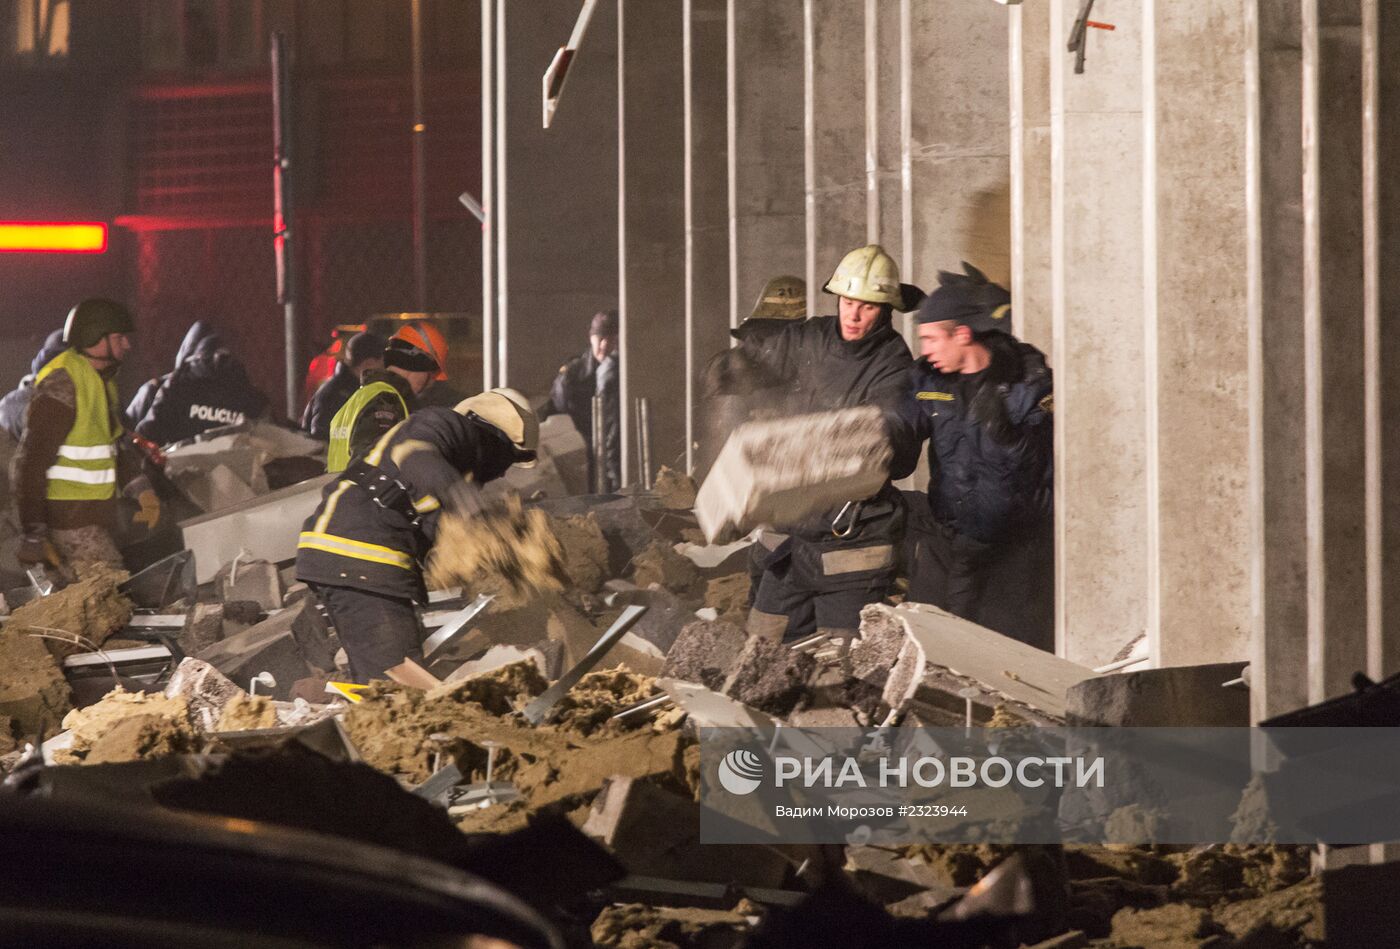 Обрушение крыши торгового центра в Риге